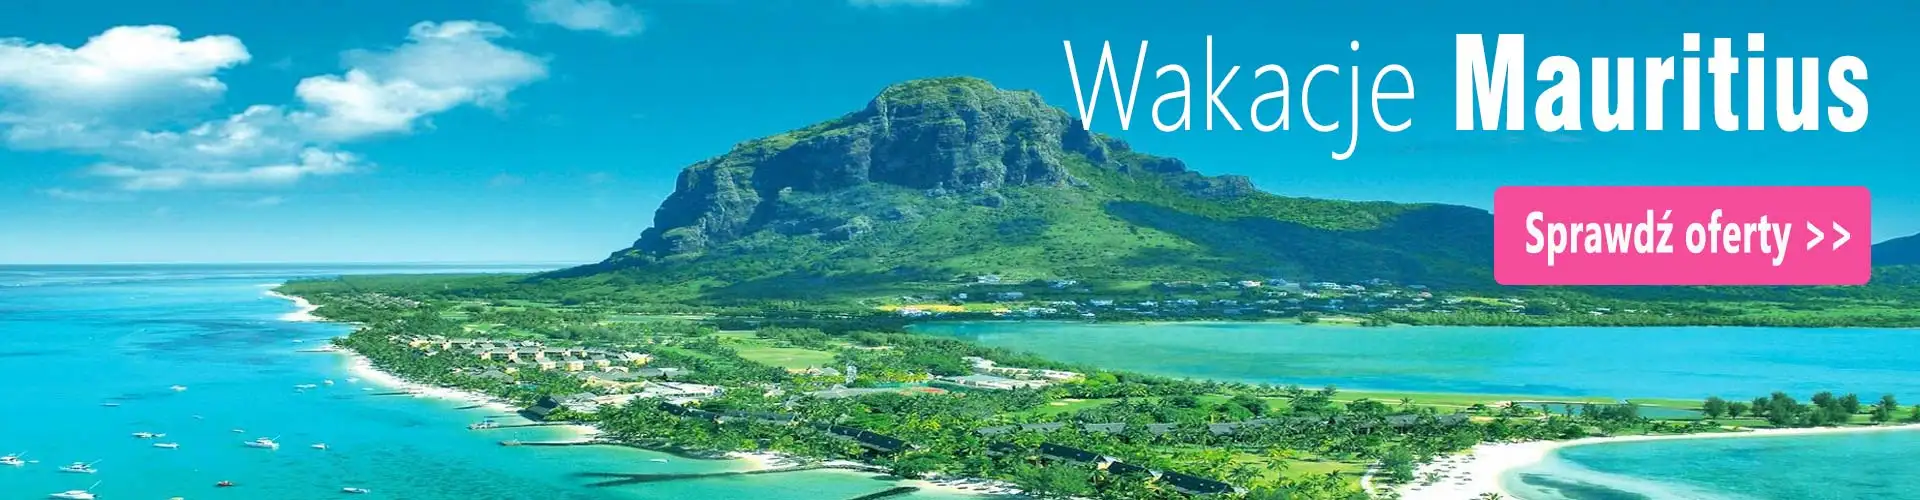 Mauritius wakacje last minute